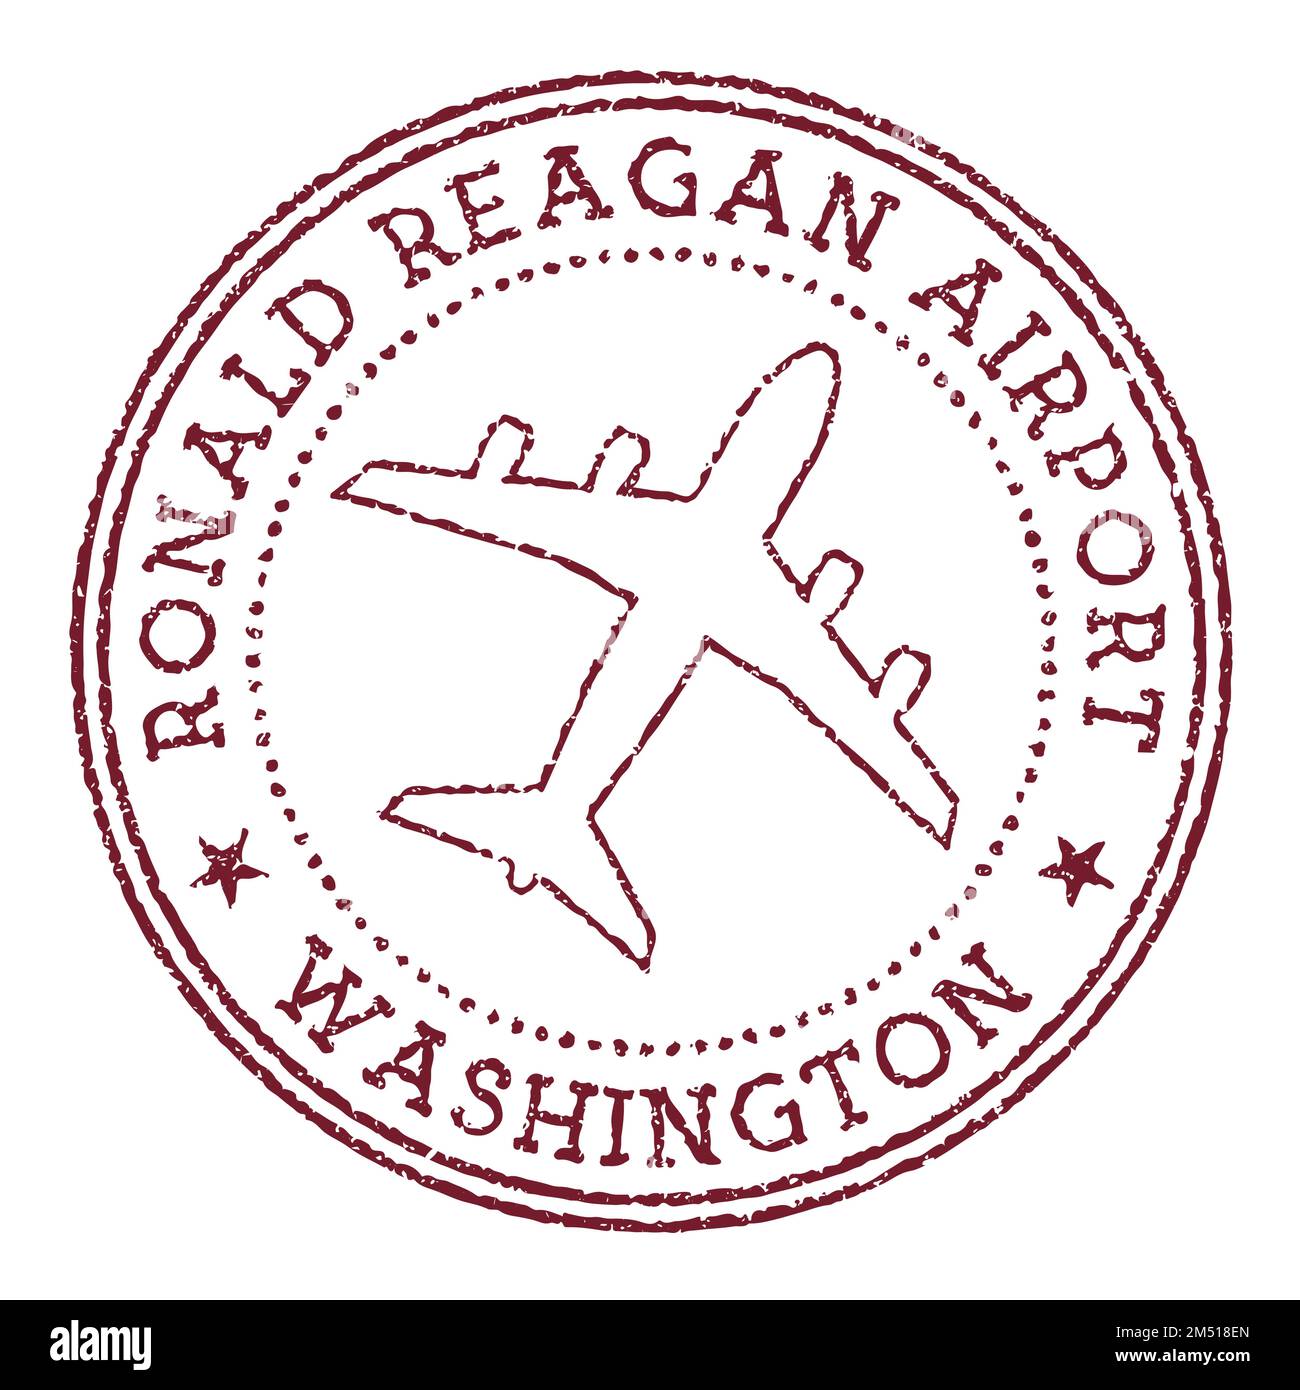 Ronald Reagan Flughafen Washington Stempel. Rundes Logo des Flughafens von Washington. Vektordarstellung. Stock Vektor